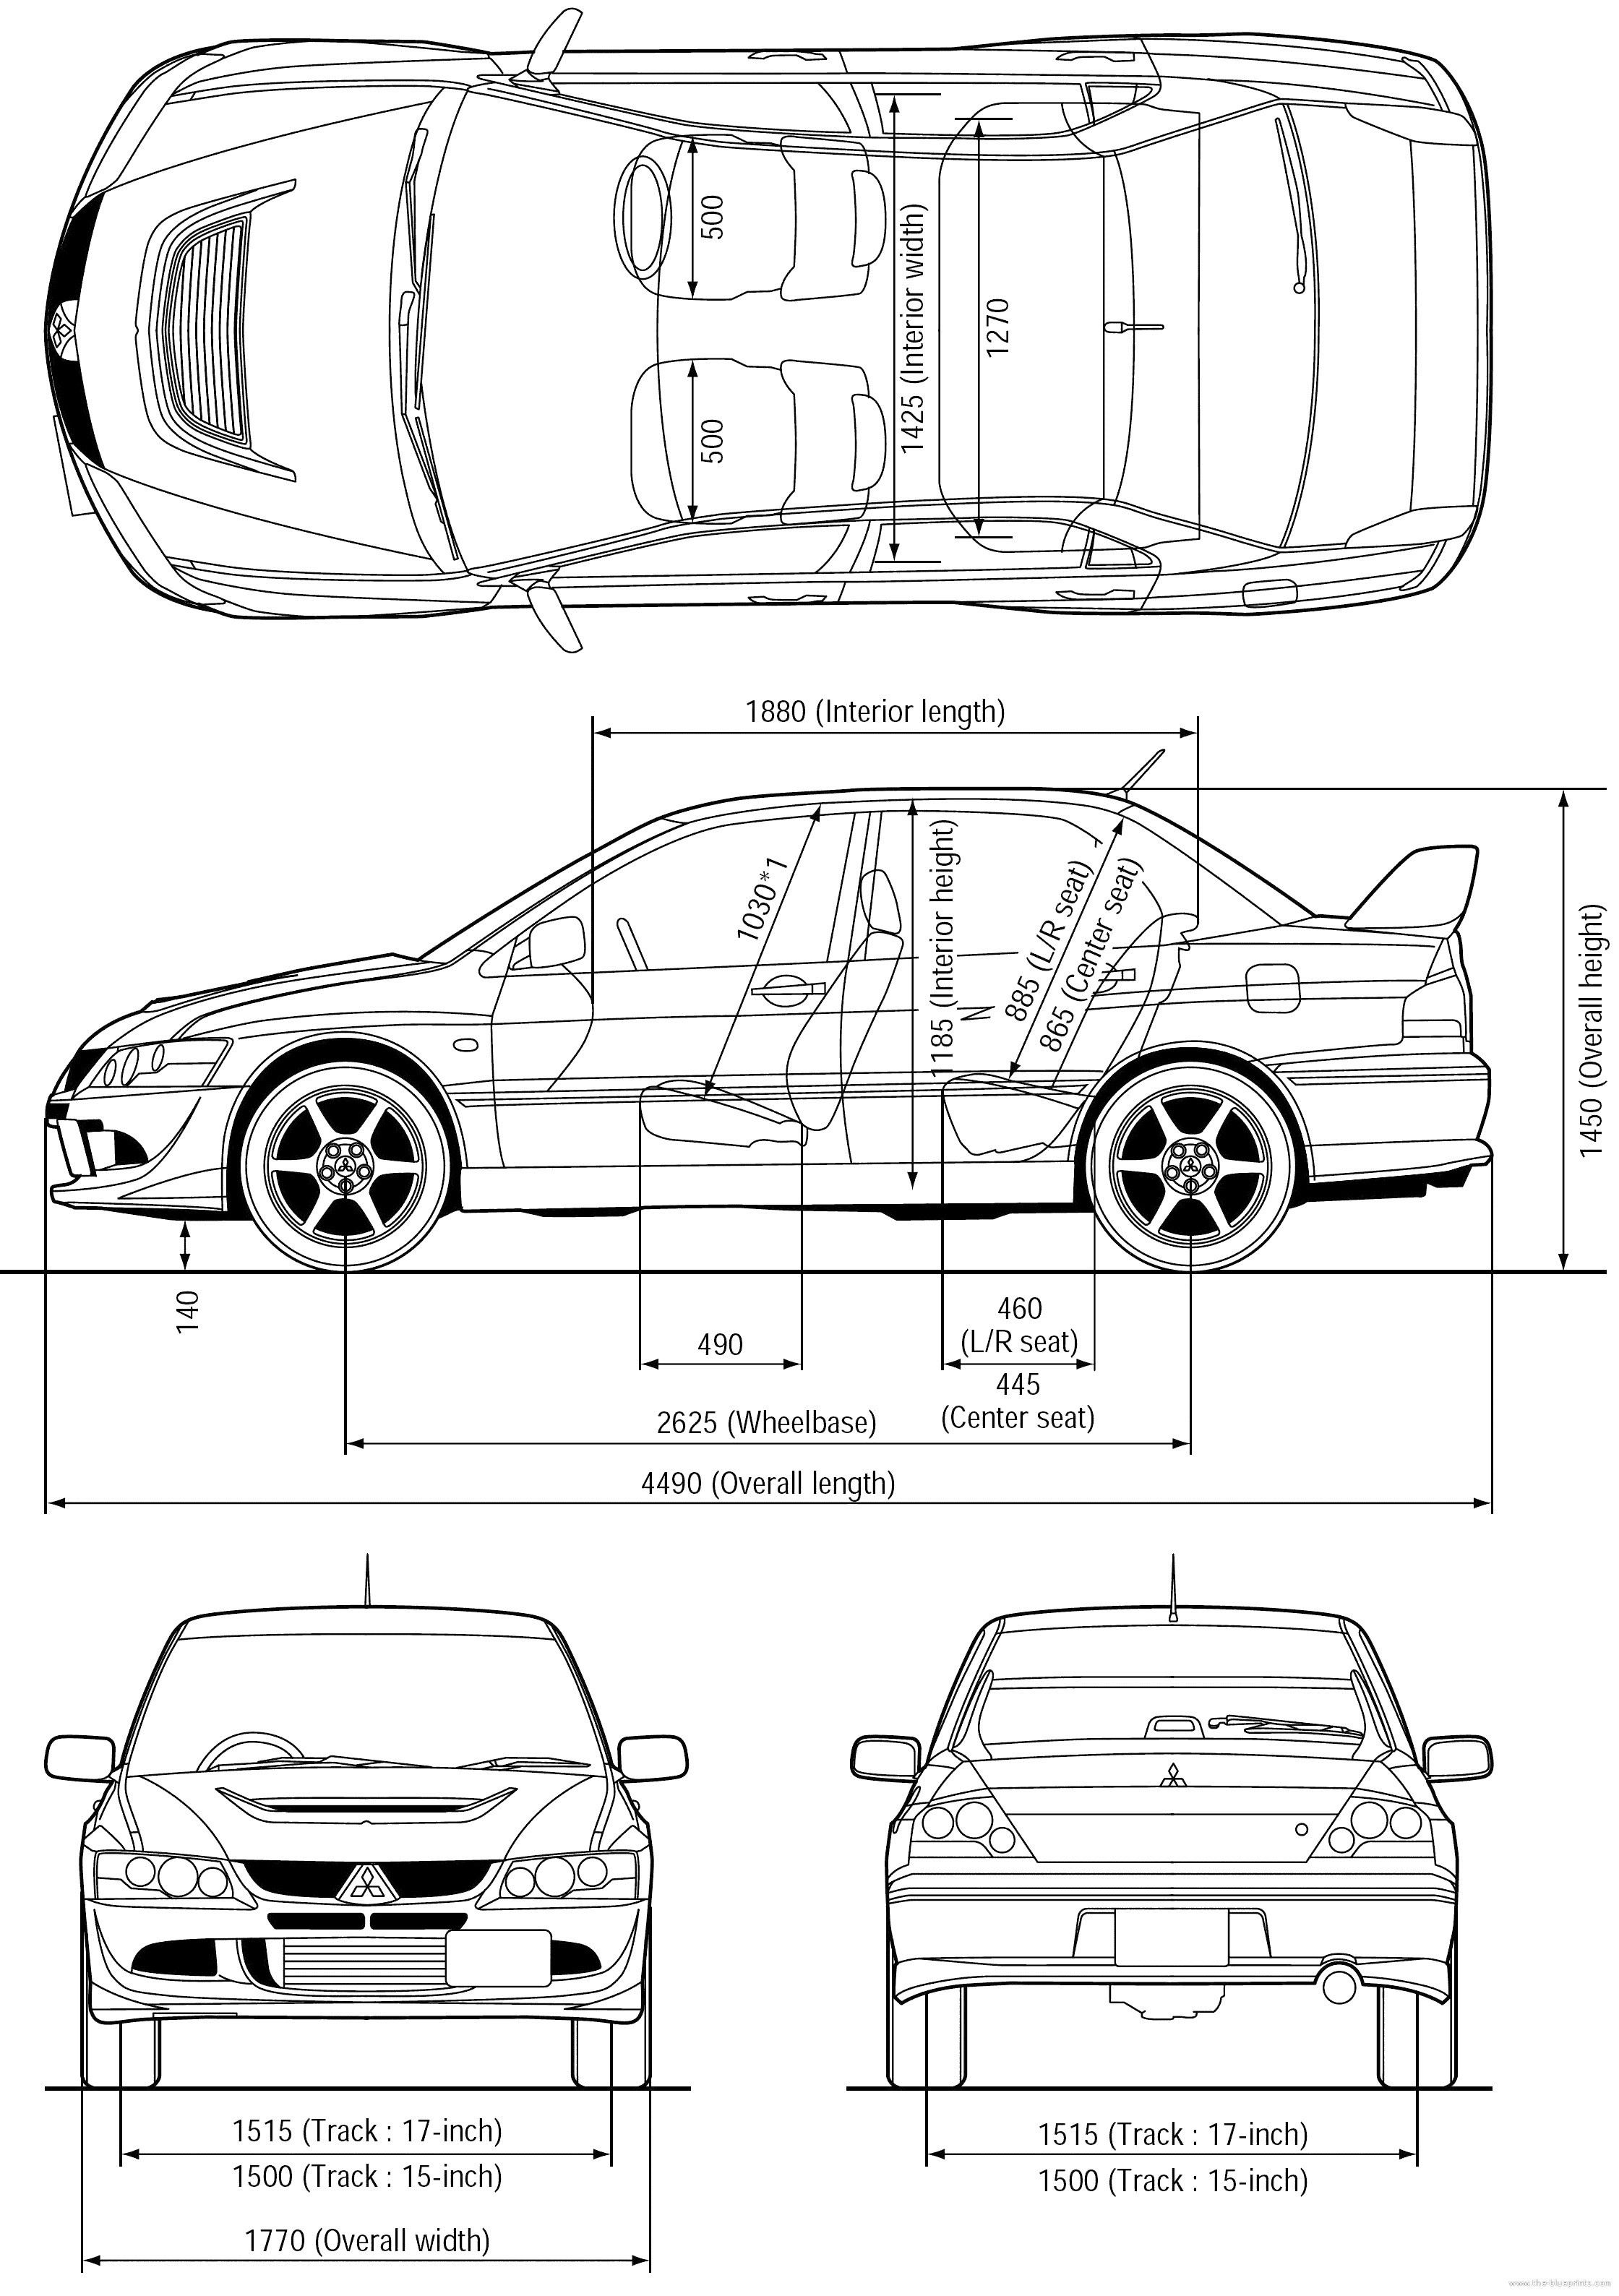 Car Part Diagram Exterior Diagram Car Exterior Parts Mitsubishi Lancer Evo 8 Cars Pinterest Of Car Part Diagram Exterior